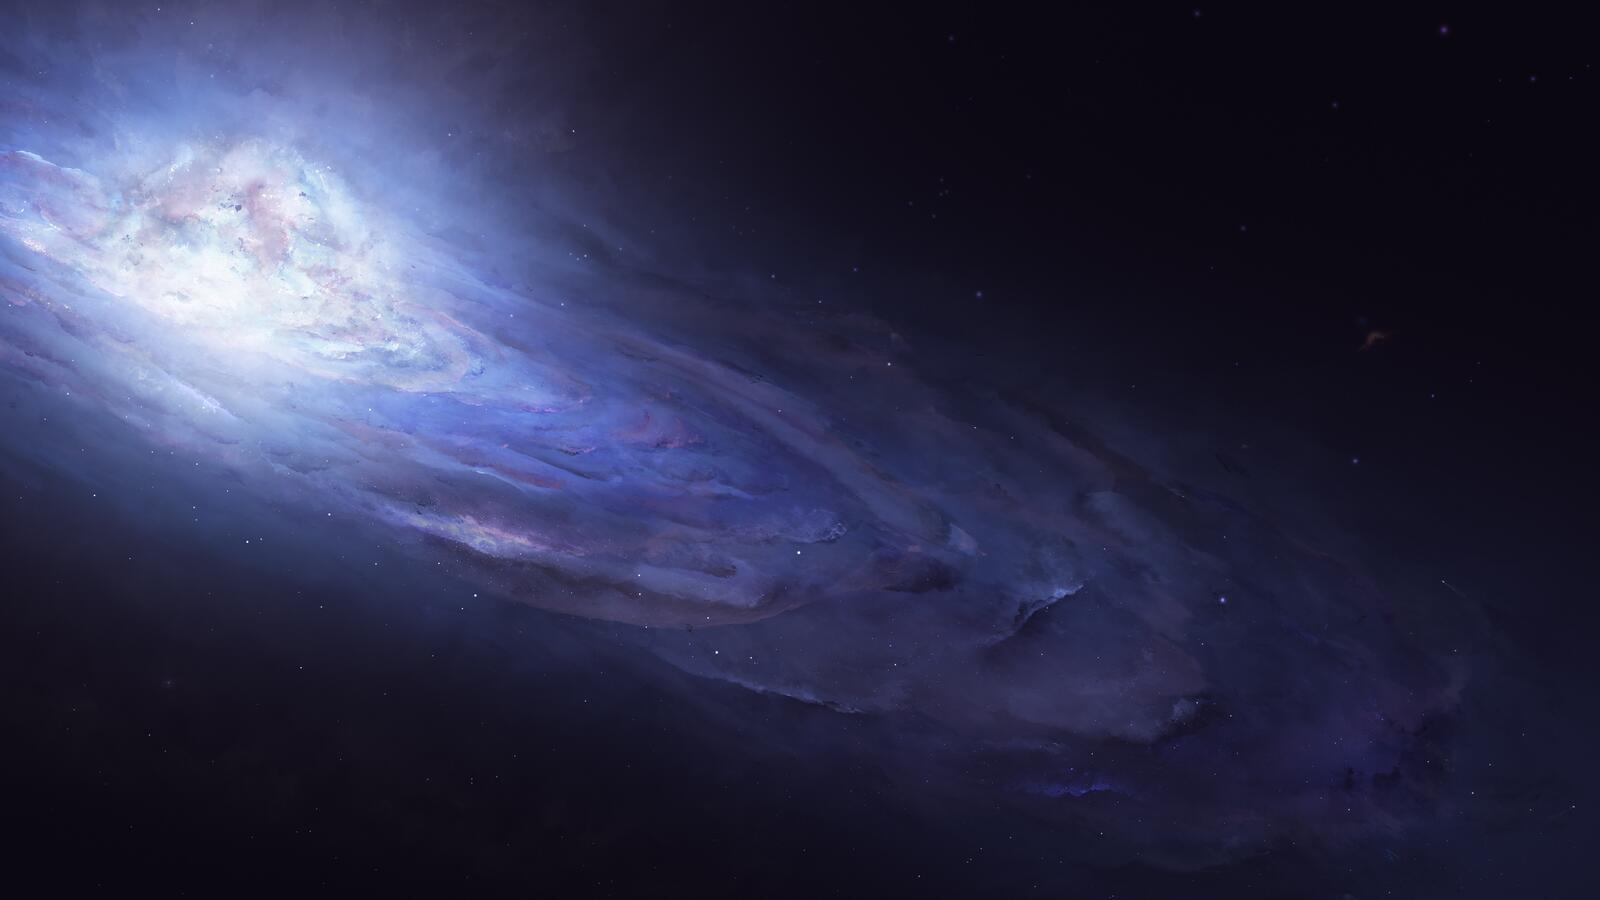 Обои галактика голубая туманность андромеда на рабочий стол